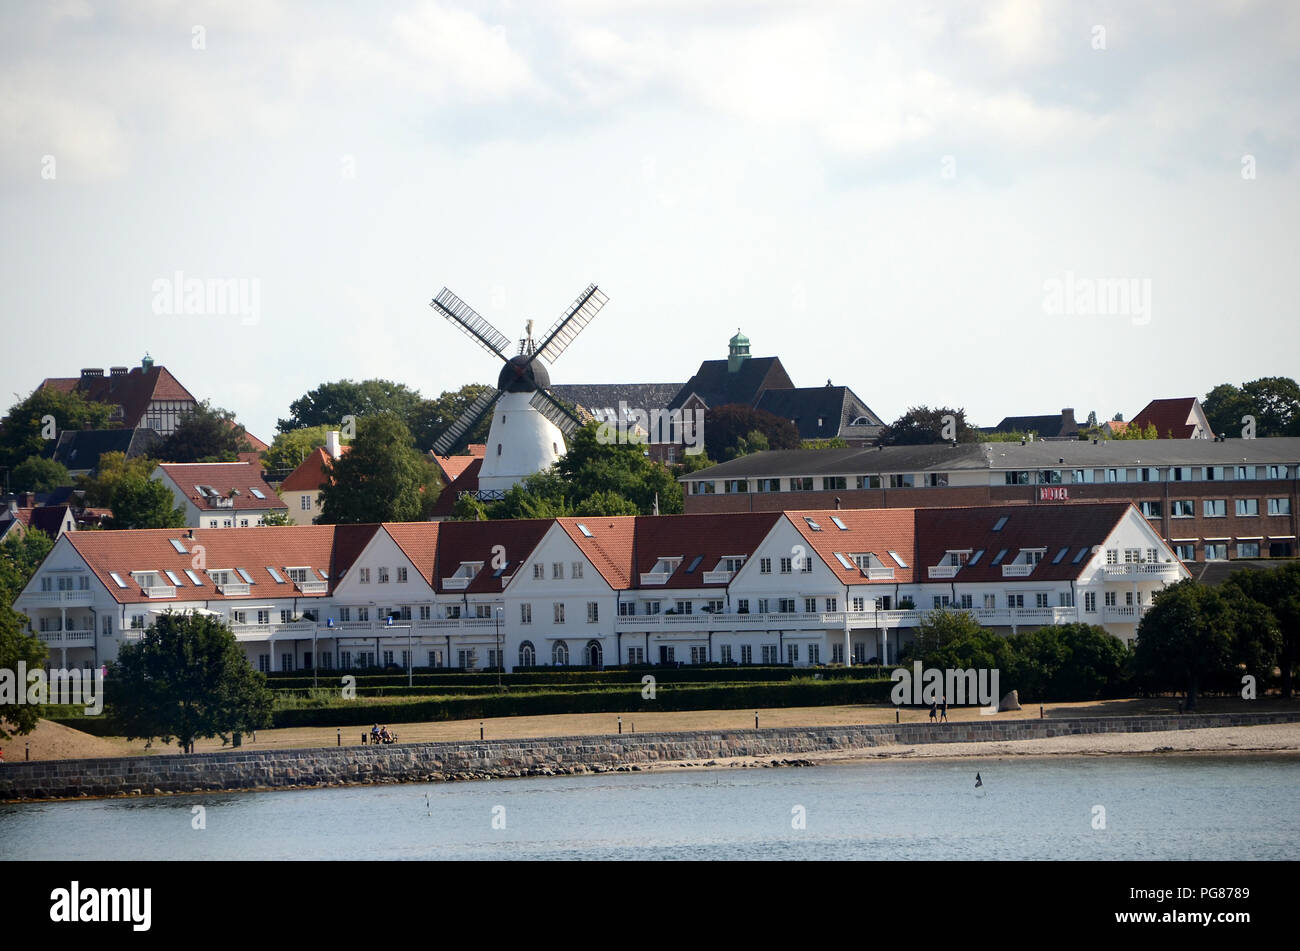 Sonderborg, Danimarca - Agosto 9, 2018: vista su una parte della città con la maggior parte vecchi edifici, con il mulino Slotsmoellen così prominente edificio. Foto Stock